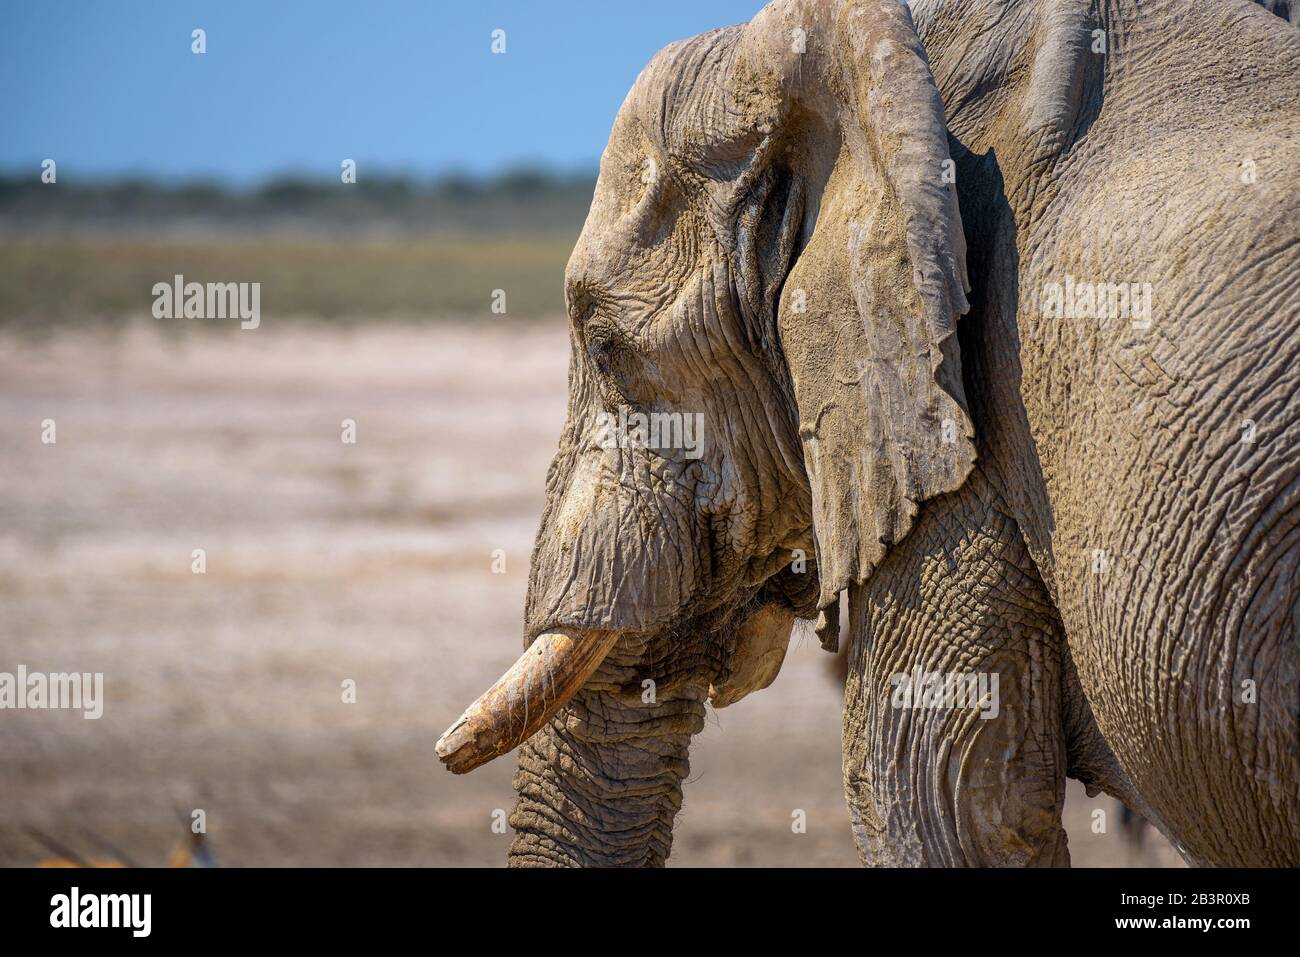 Close-up of an elephant in Etosha National Park, Namibia Stock Photo